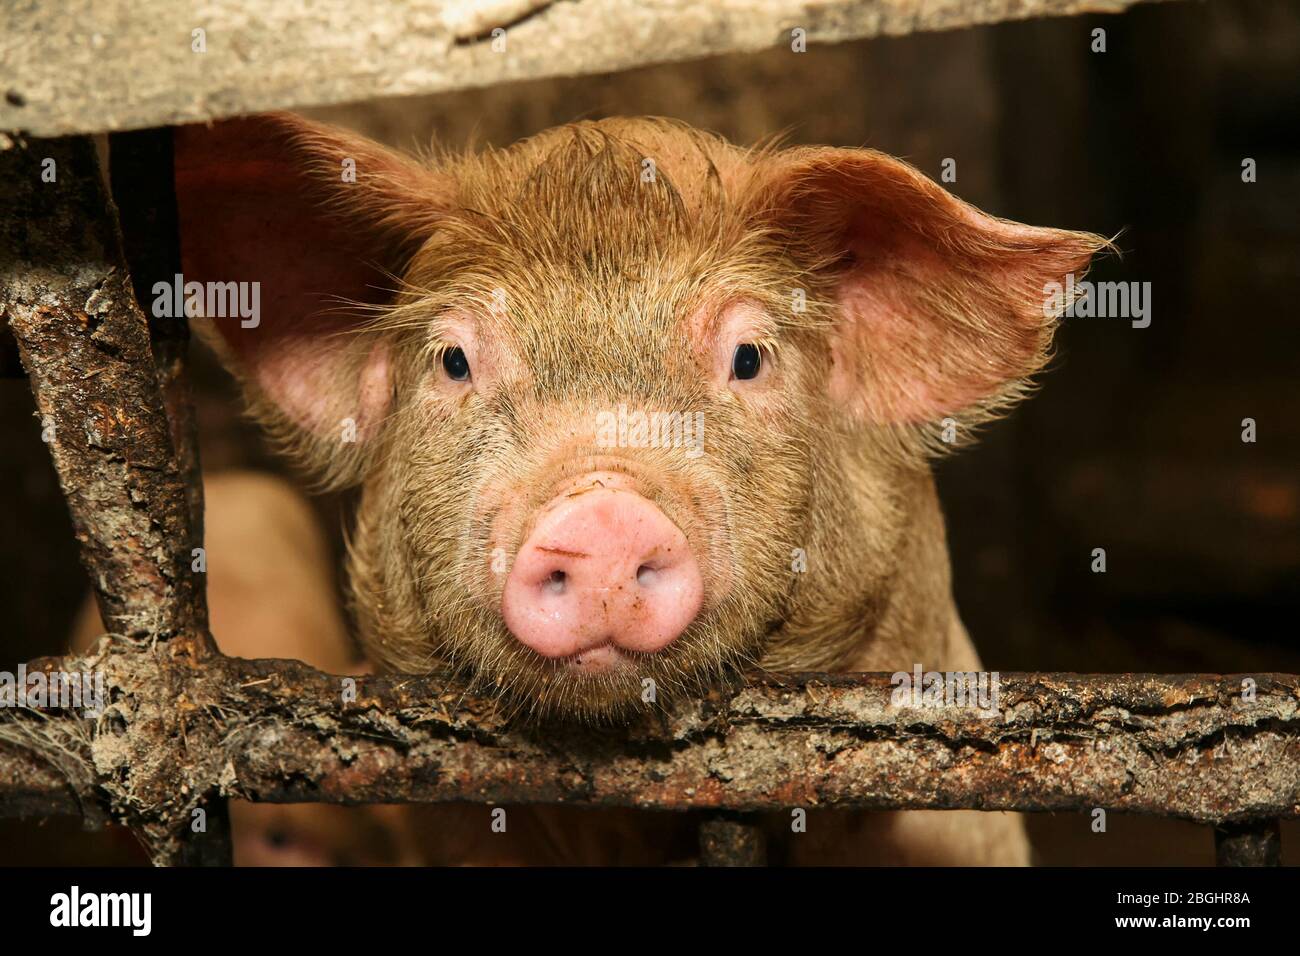 Pig face close up portrait. Stock Photo